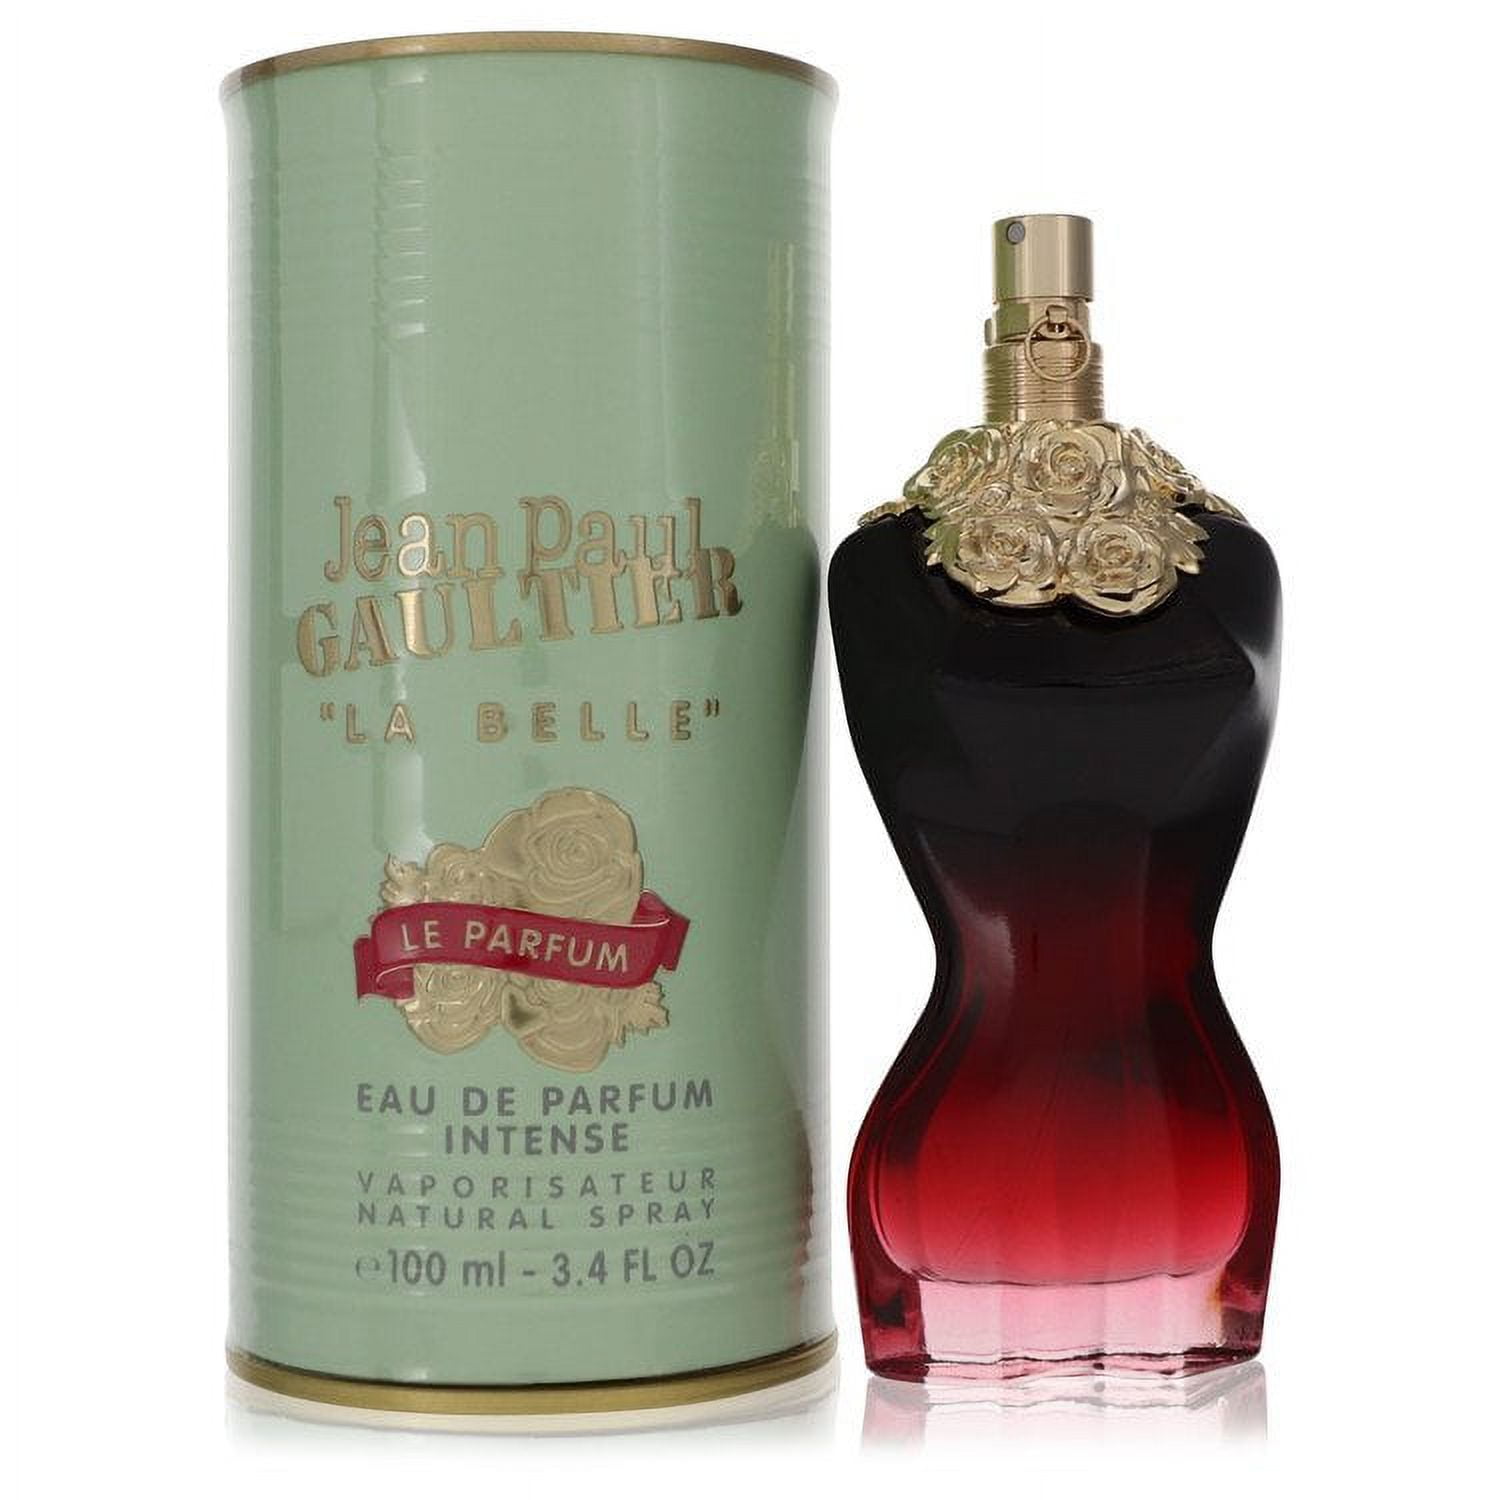 Belle for Jean 3.4 Parfum oz Spray Gaultier De La Paul Female Intense by Gaultier Parfum Eau Le Jean Paul